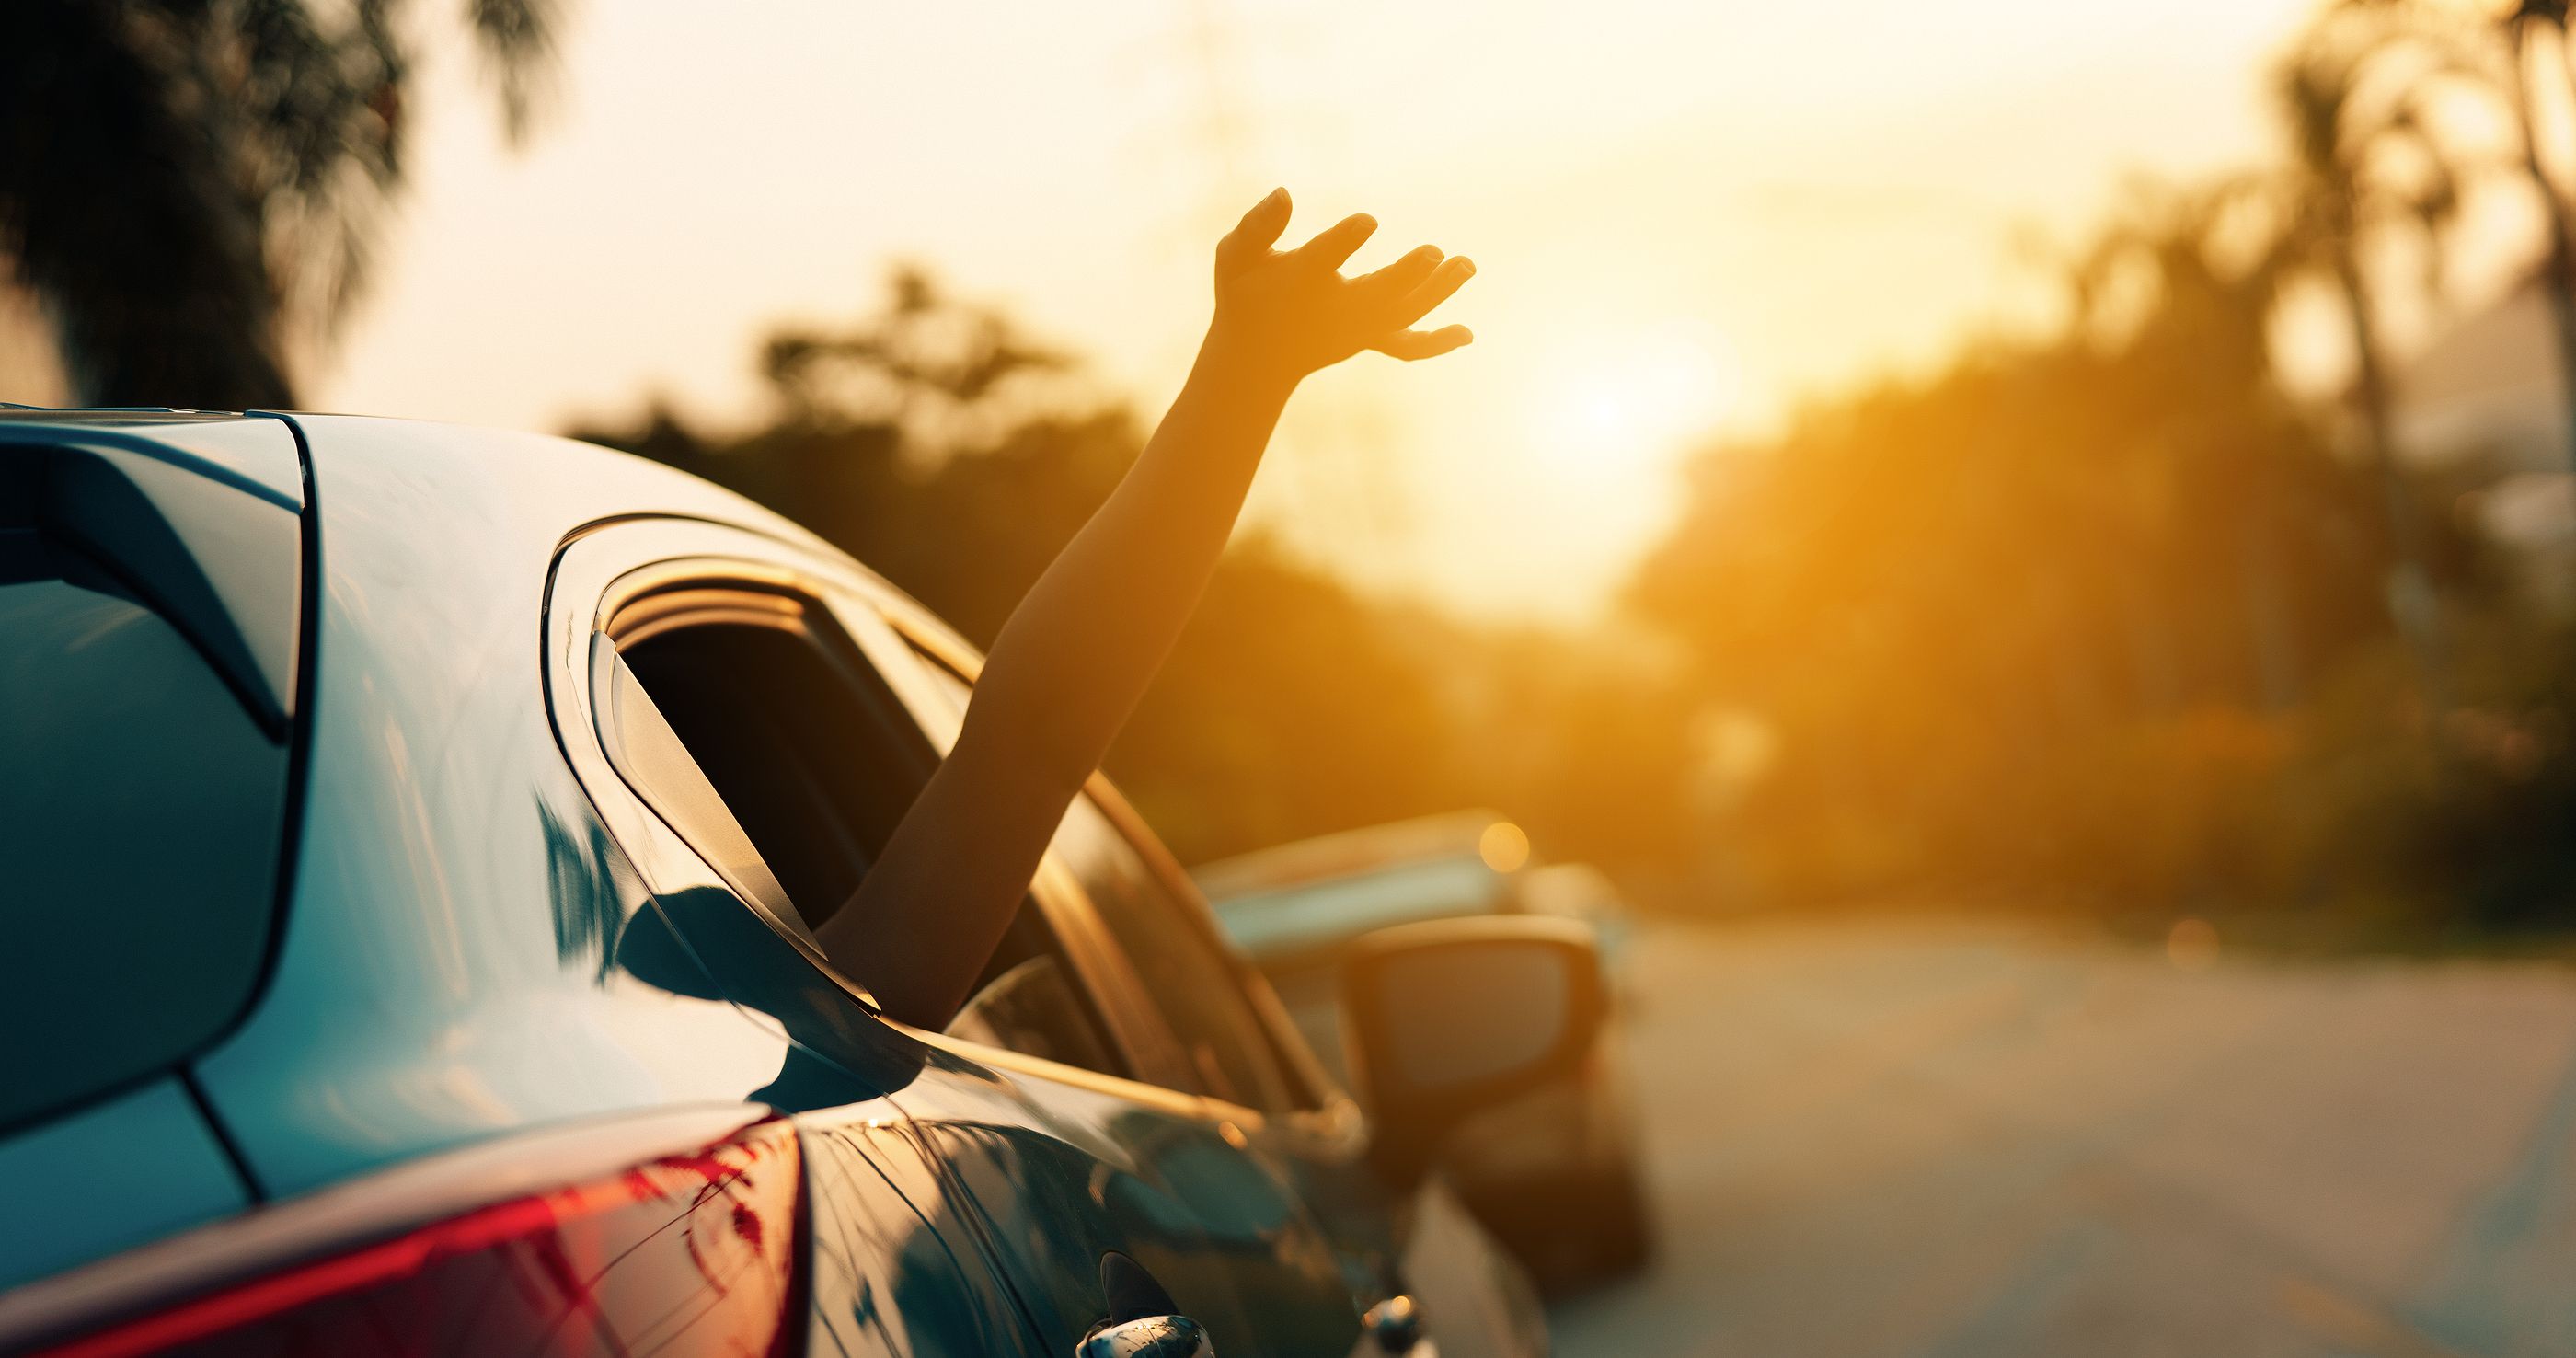 Sigue estos consejos para conducir de forma segura con altas temperaturas. Foto: Bigstock